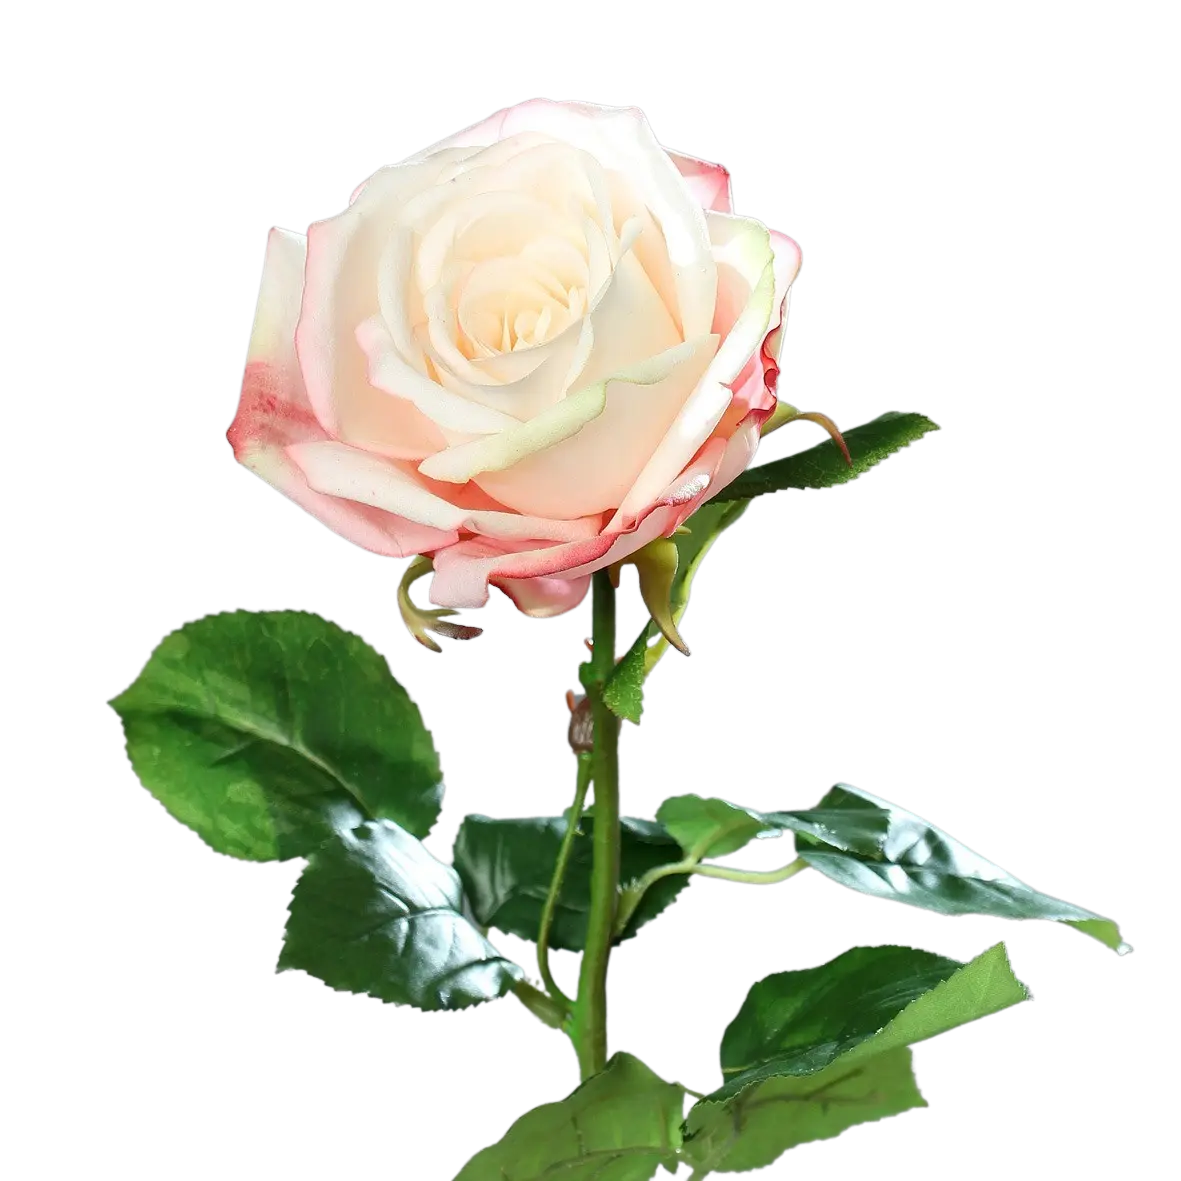 Rosa artificial - Xenia | 66 cm